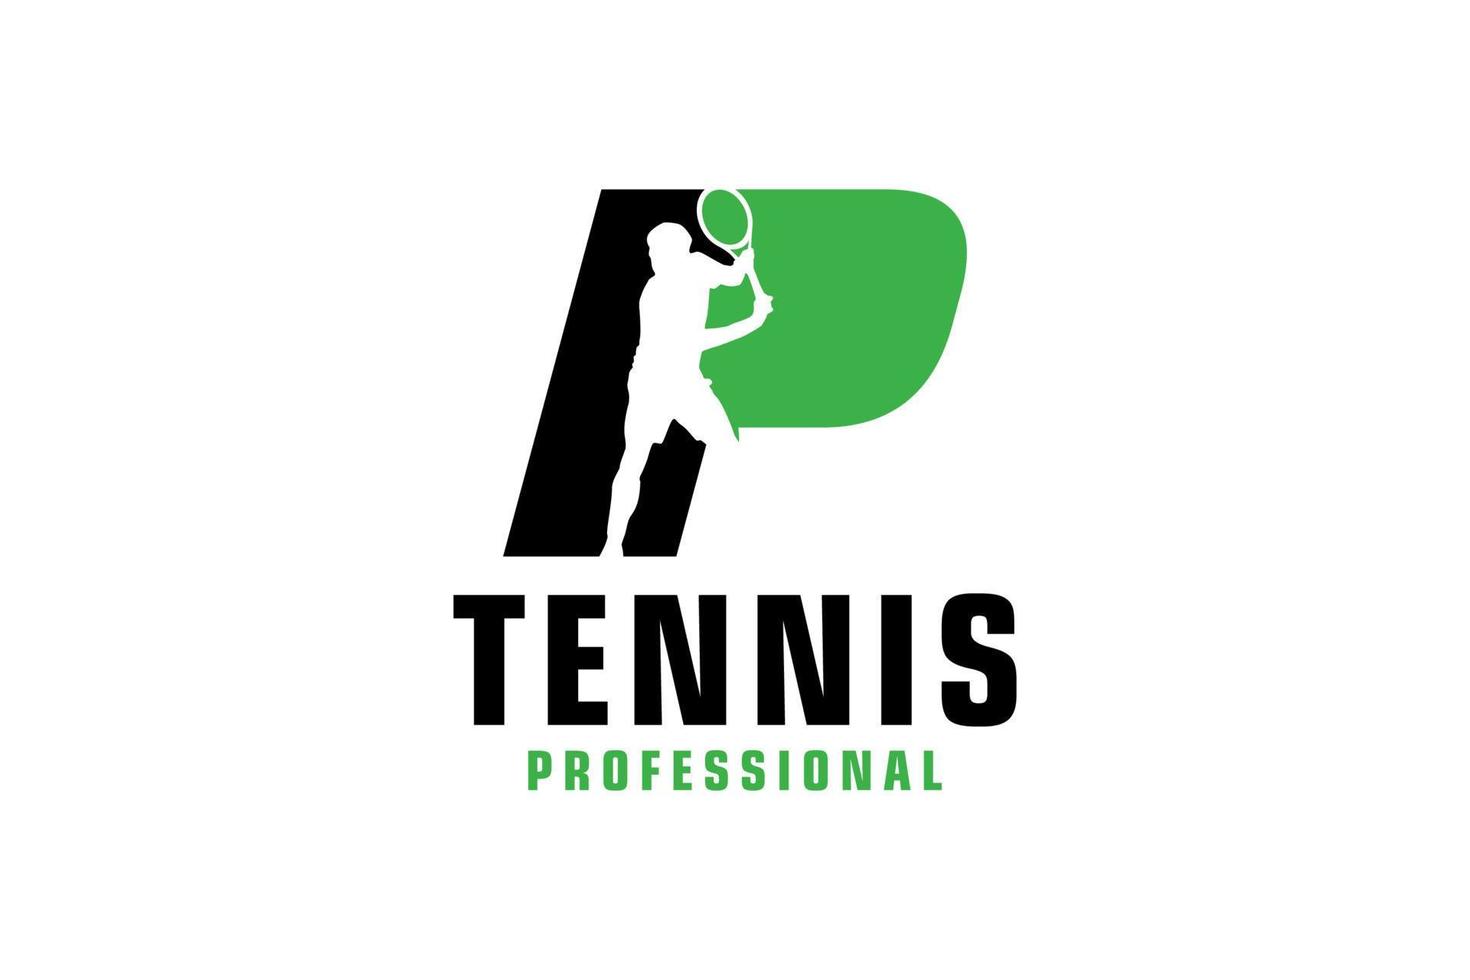 buchstabe p mit tennisspieler-silhouette-logo-design. Vektordesign-Vorlagenelemente für Sportteams oder Corporate Identity. vektor